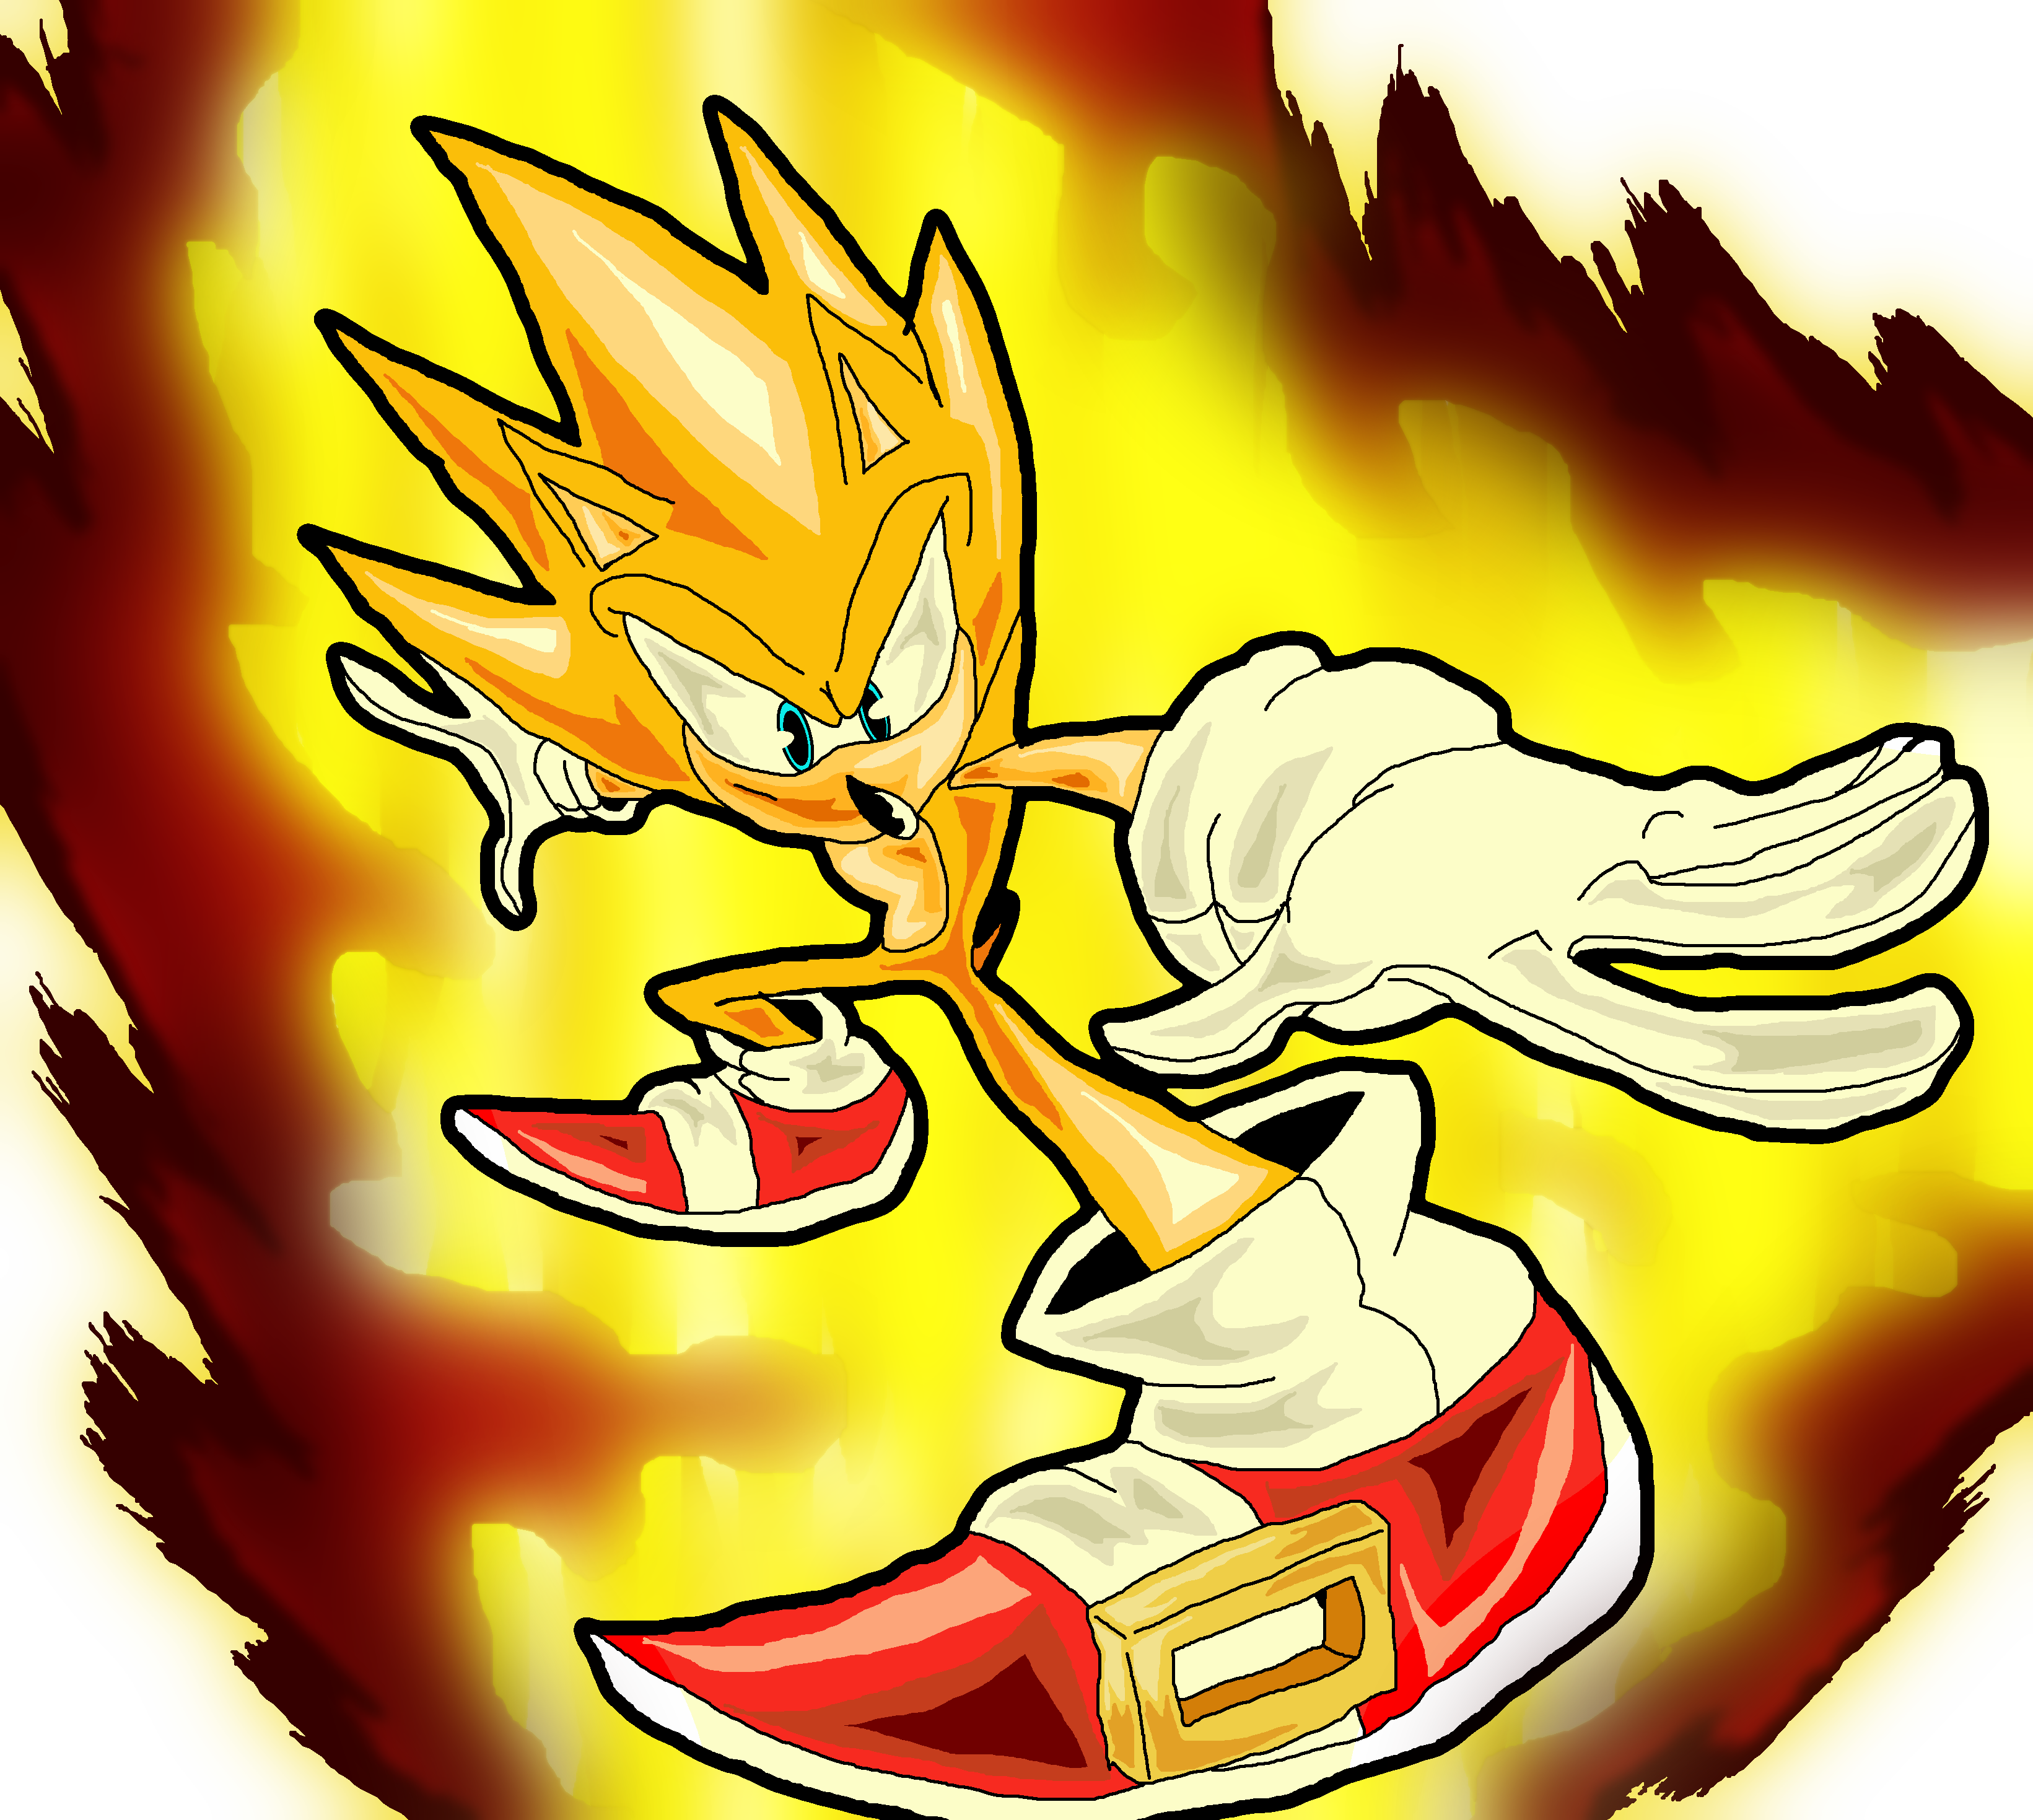 Super Sonic is ready by Geki696 on DeviantArt